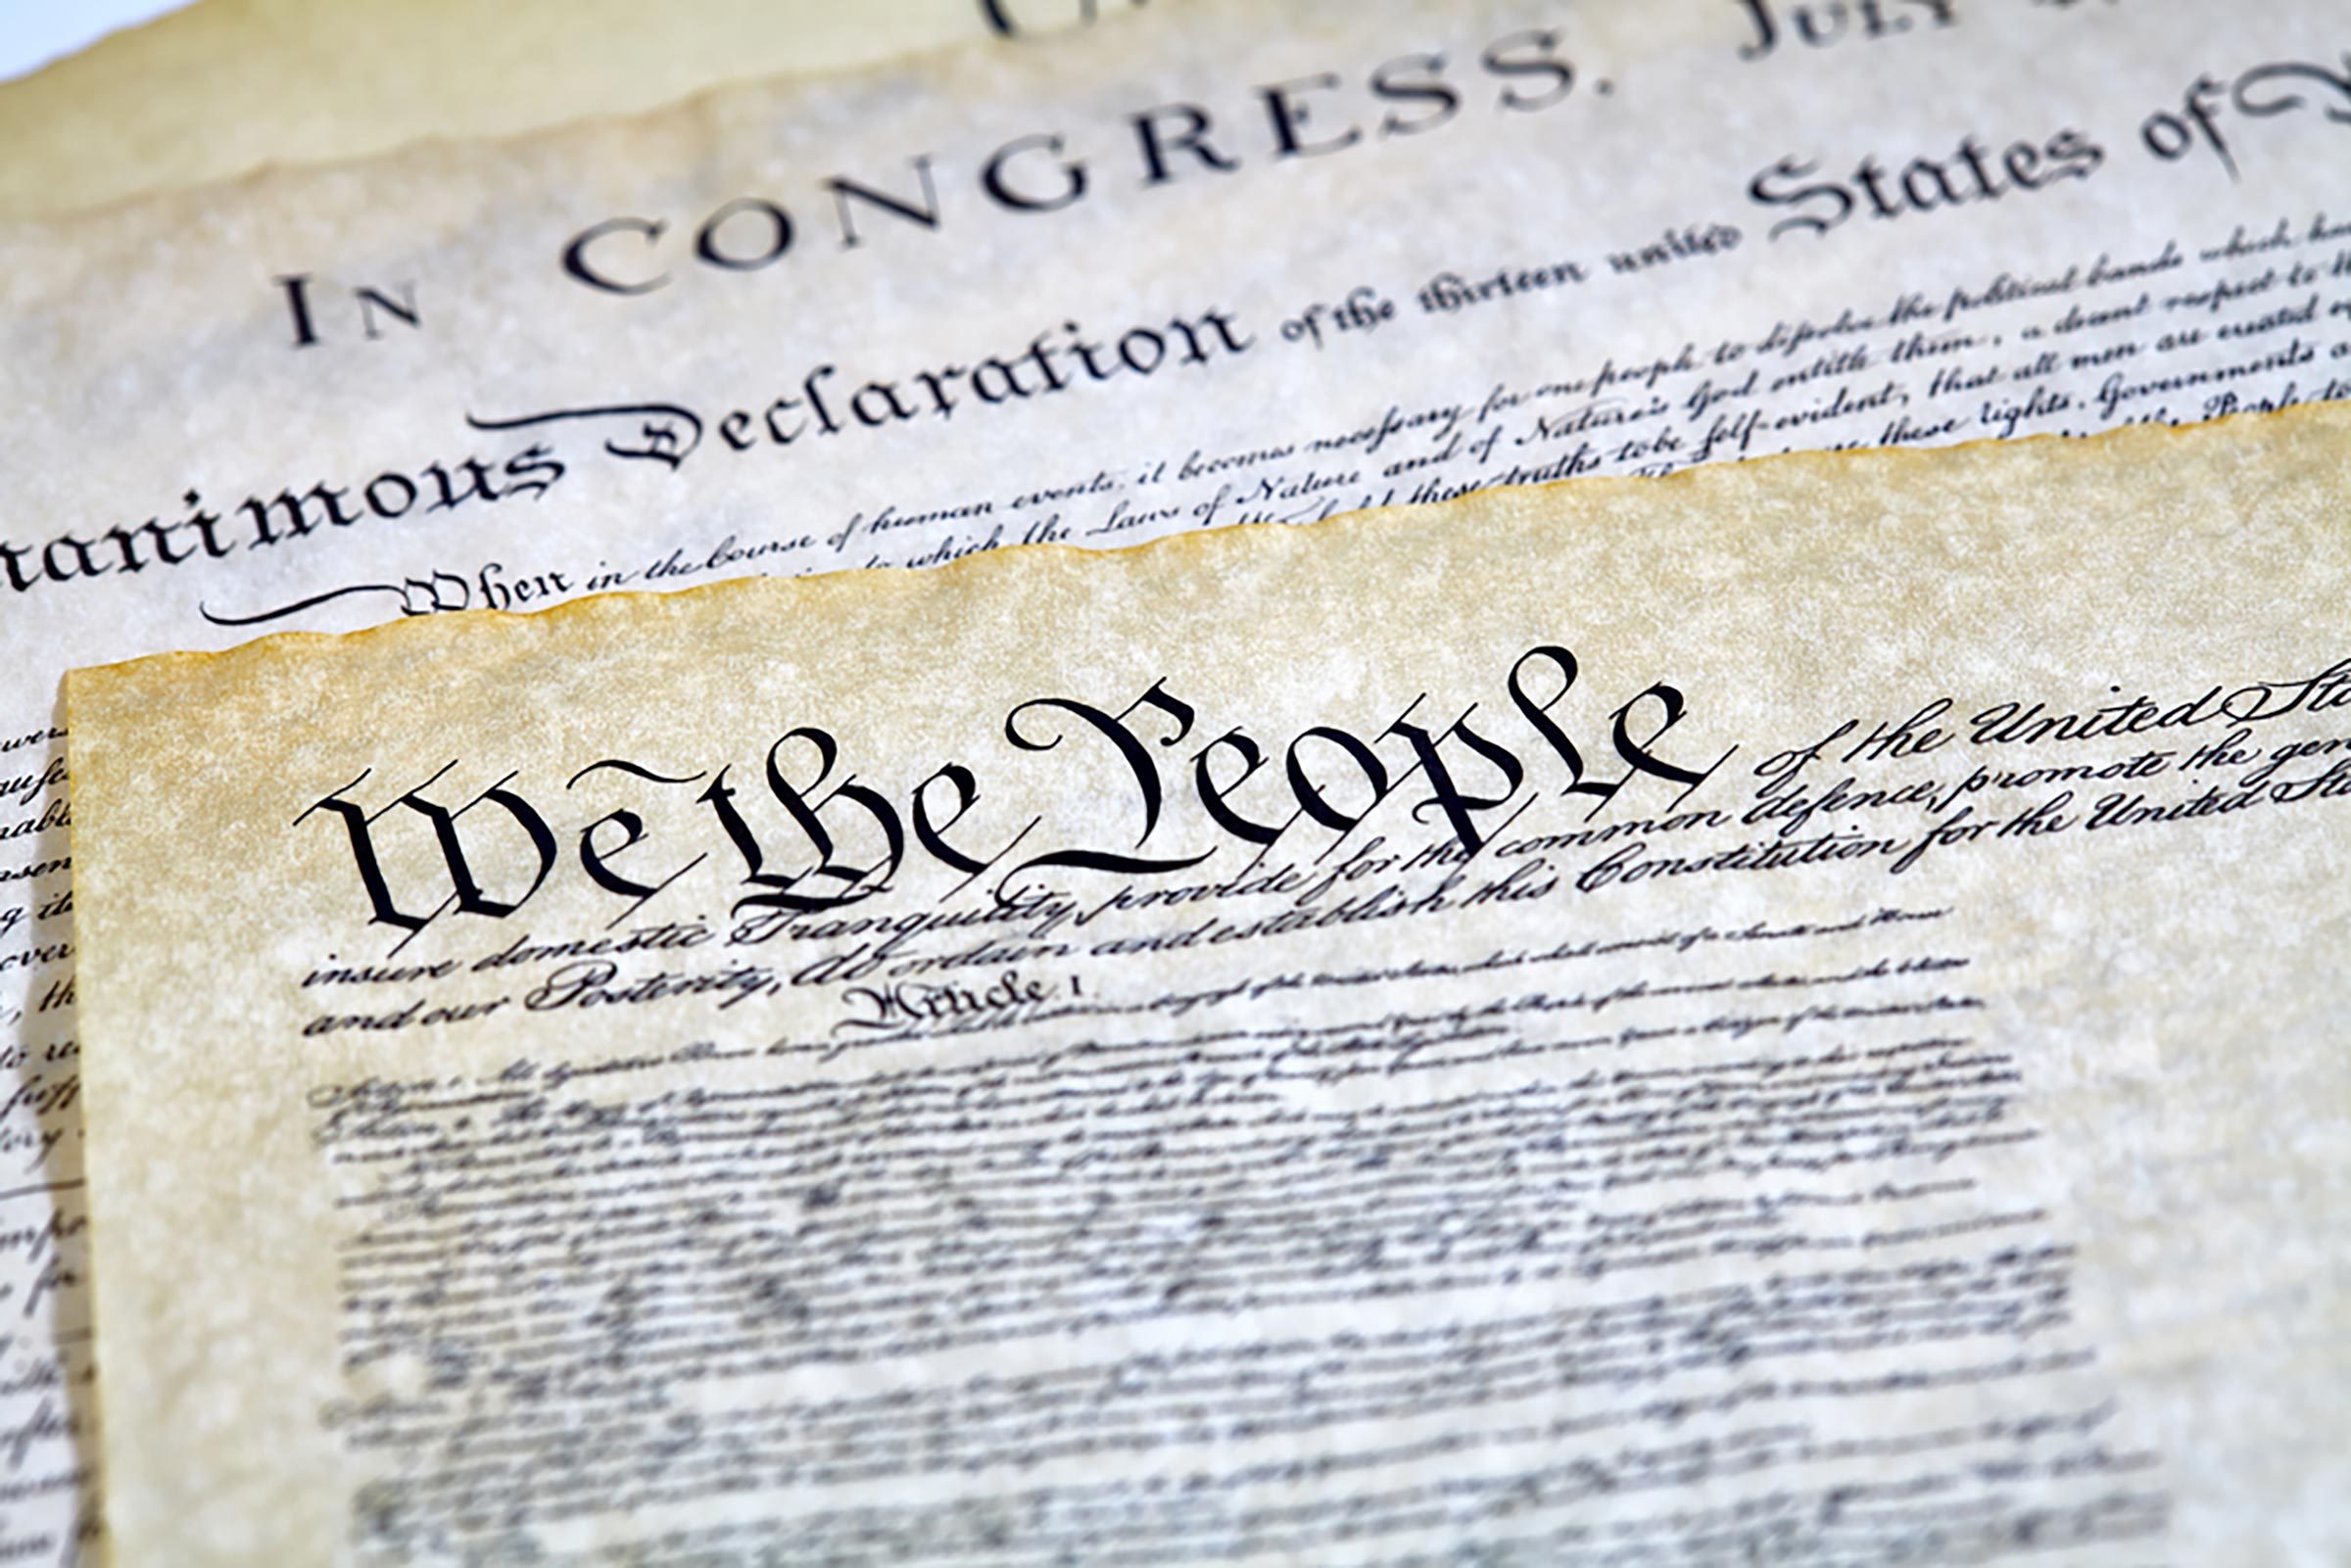 The Twelfth Amendment: The Constitutional Amendments